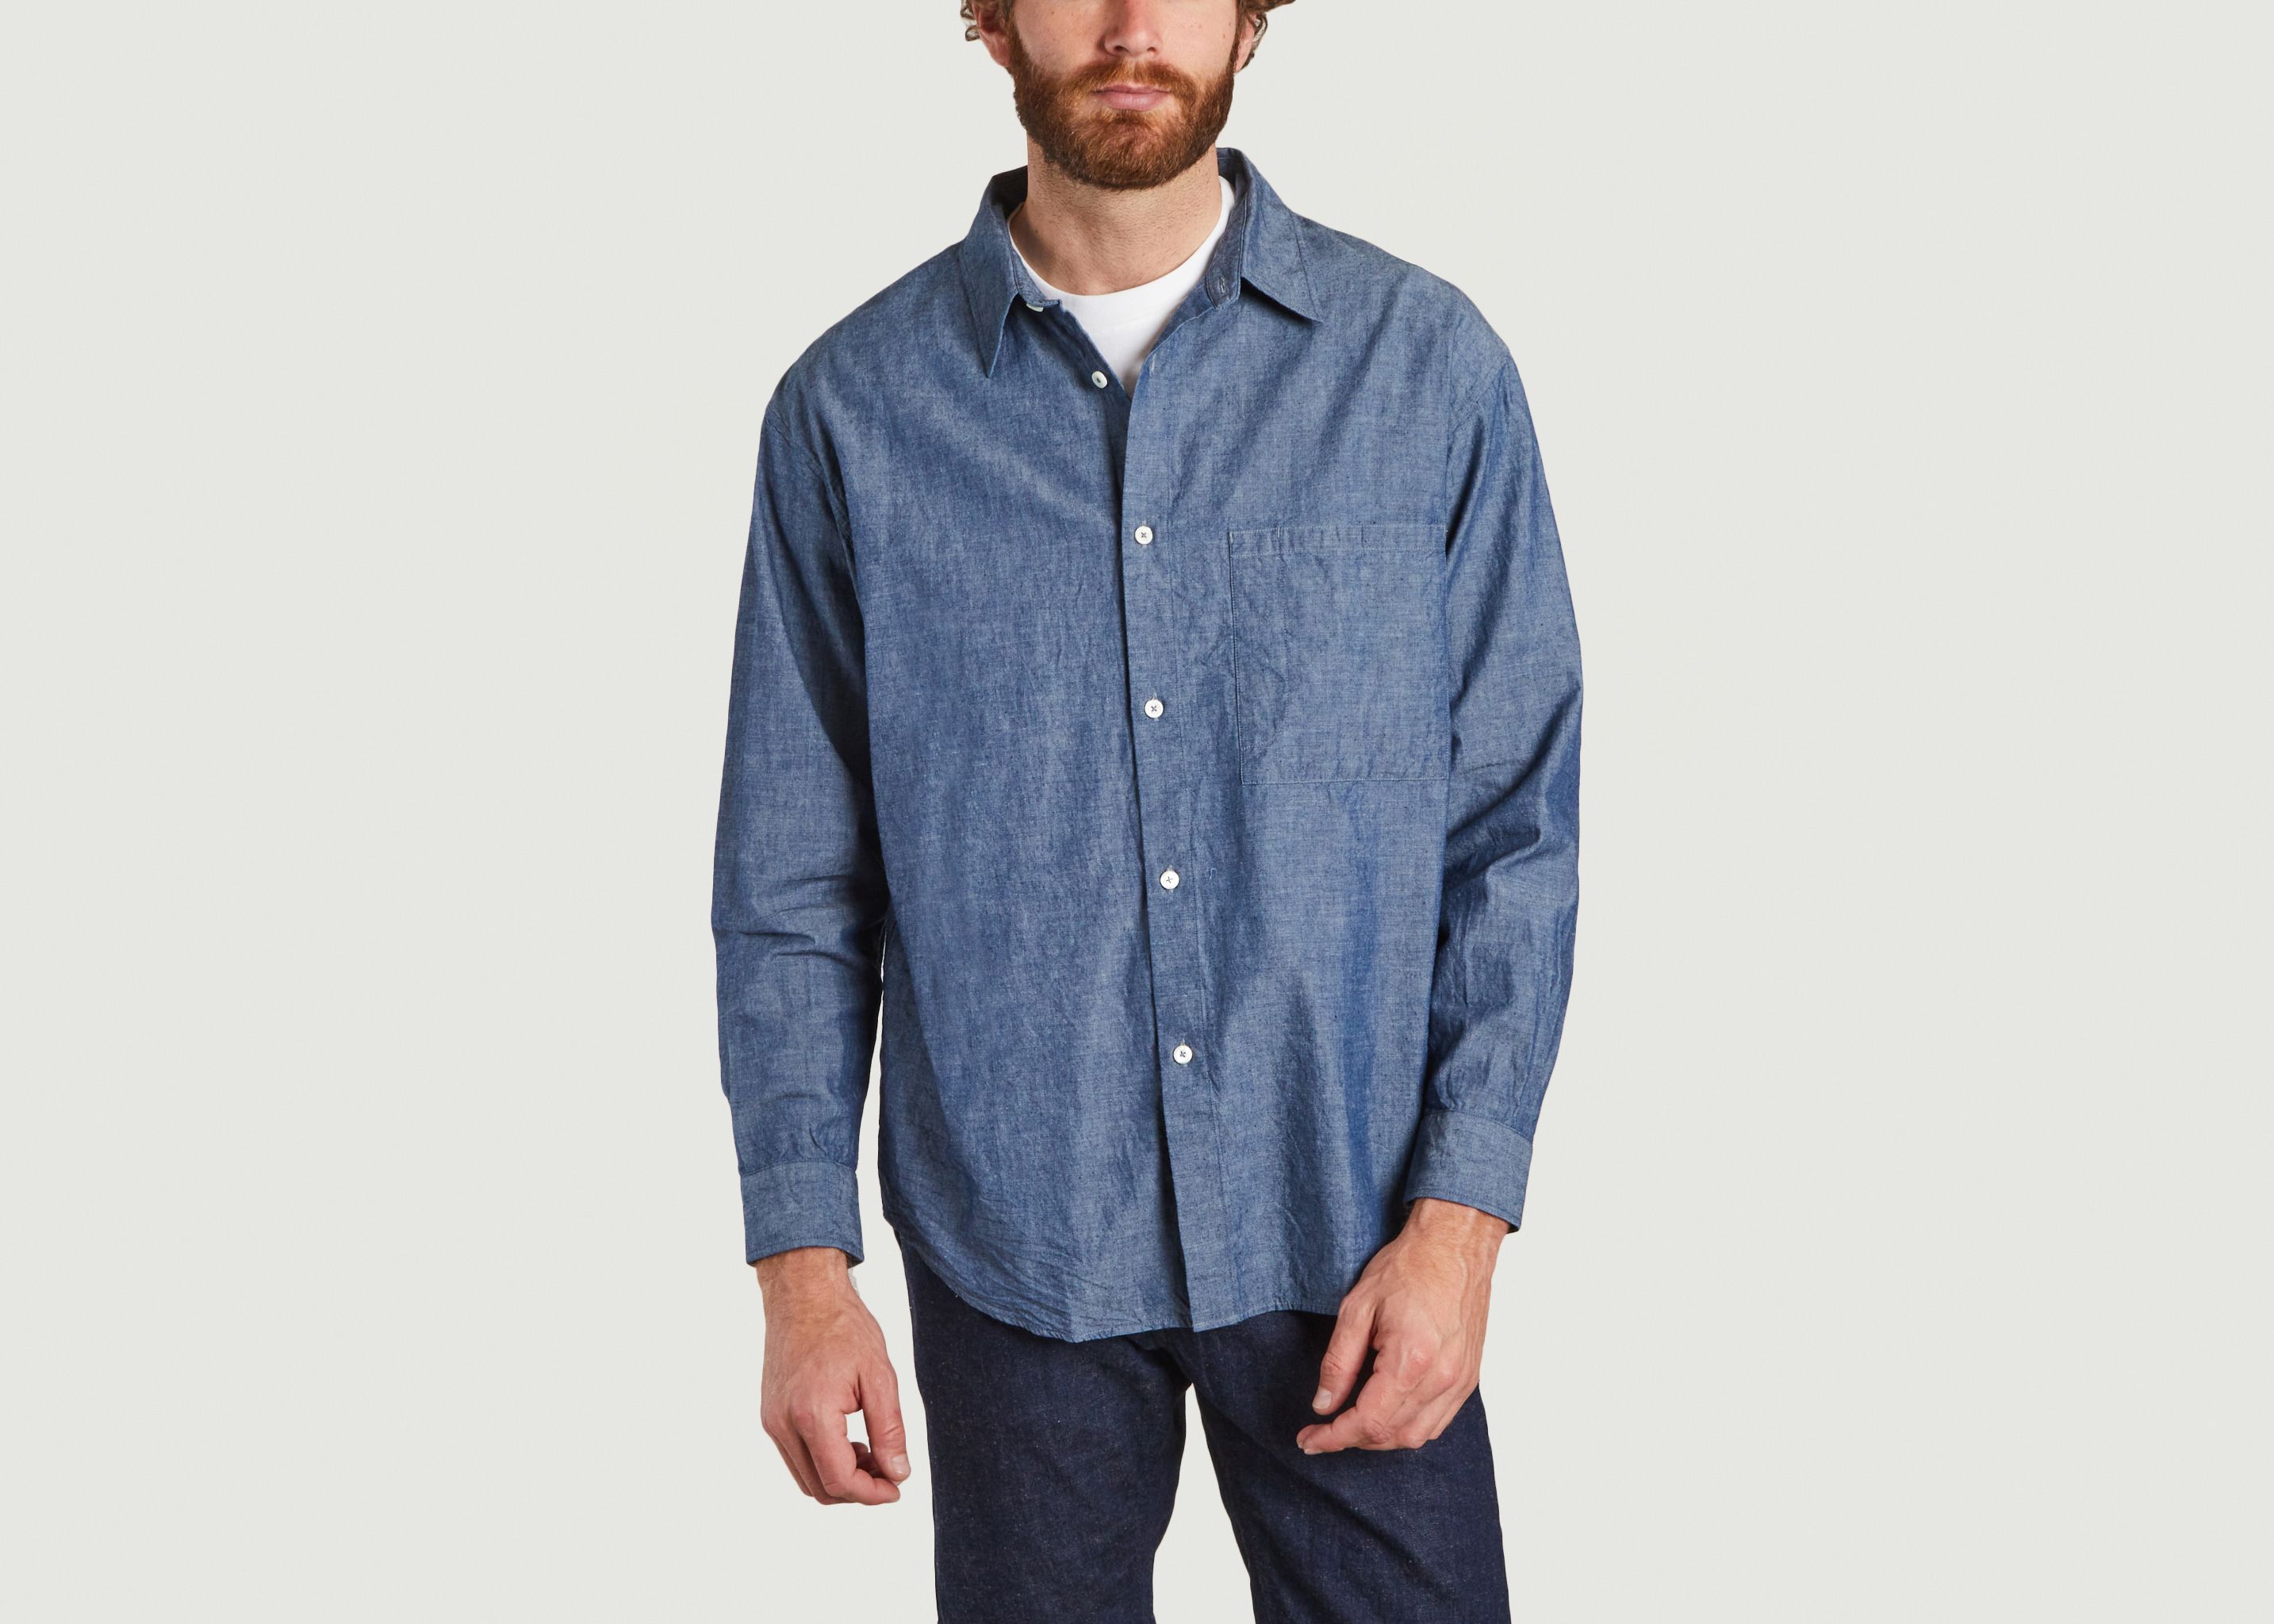 Deli cotton shirt - Japan Blue Jeans